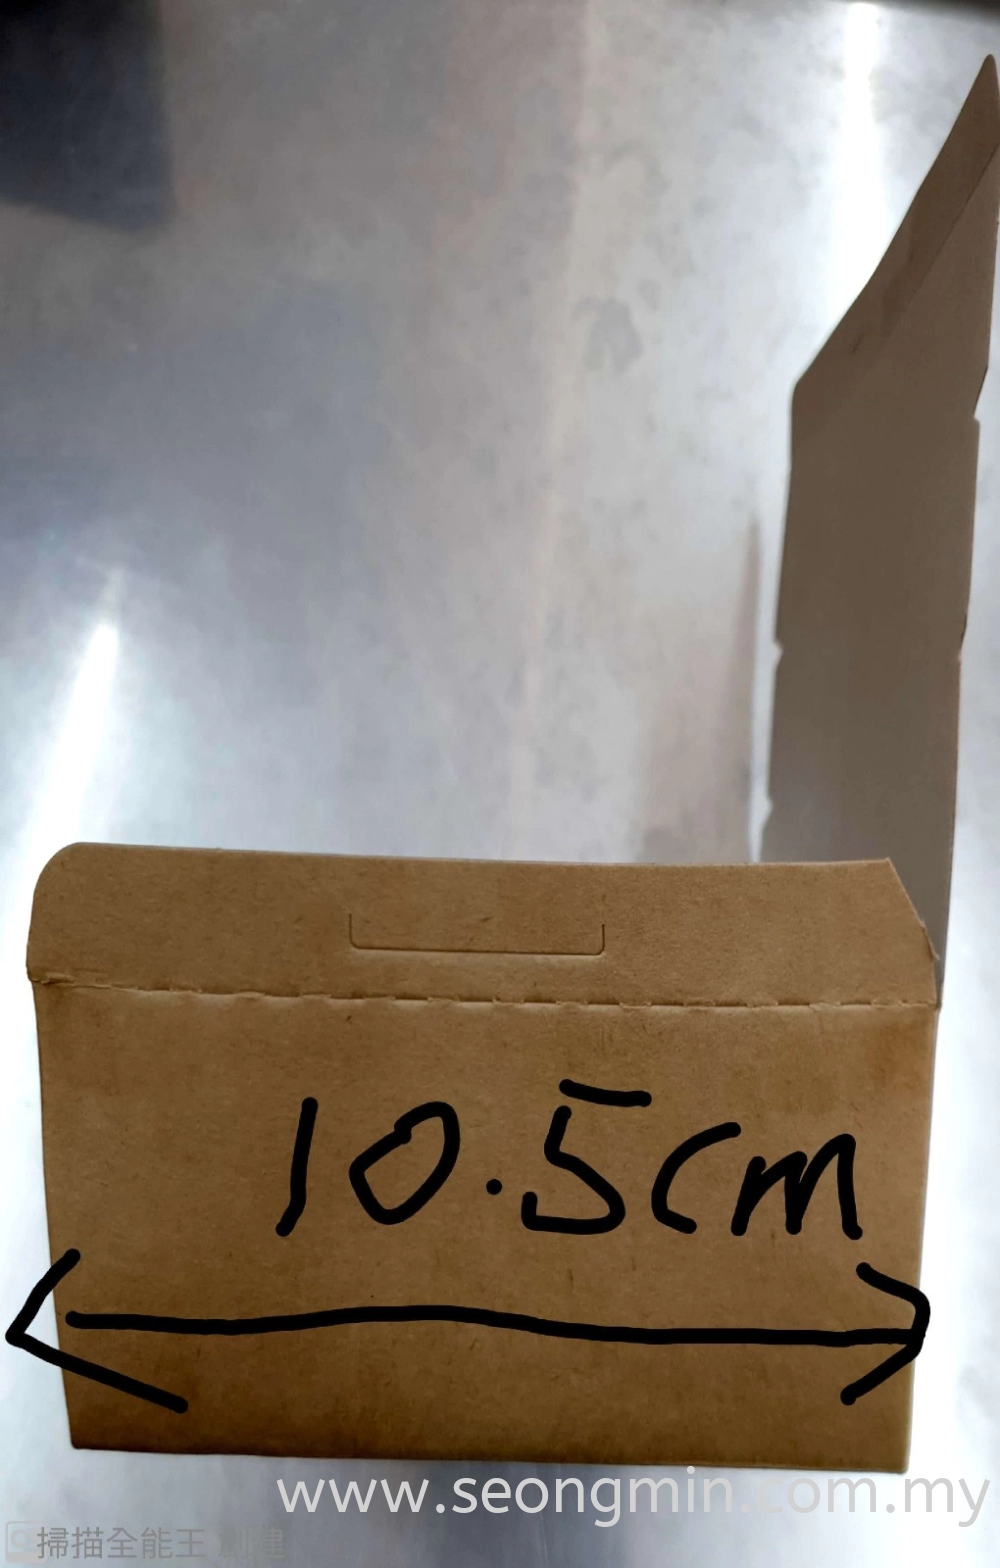 Paper Lunch Box M Size 150mm x 105mm x 46mm Cap Big Tree